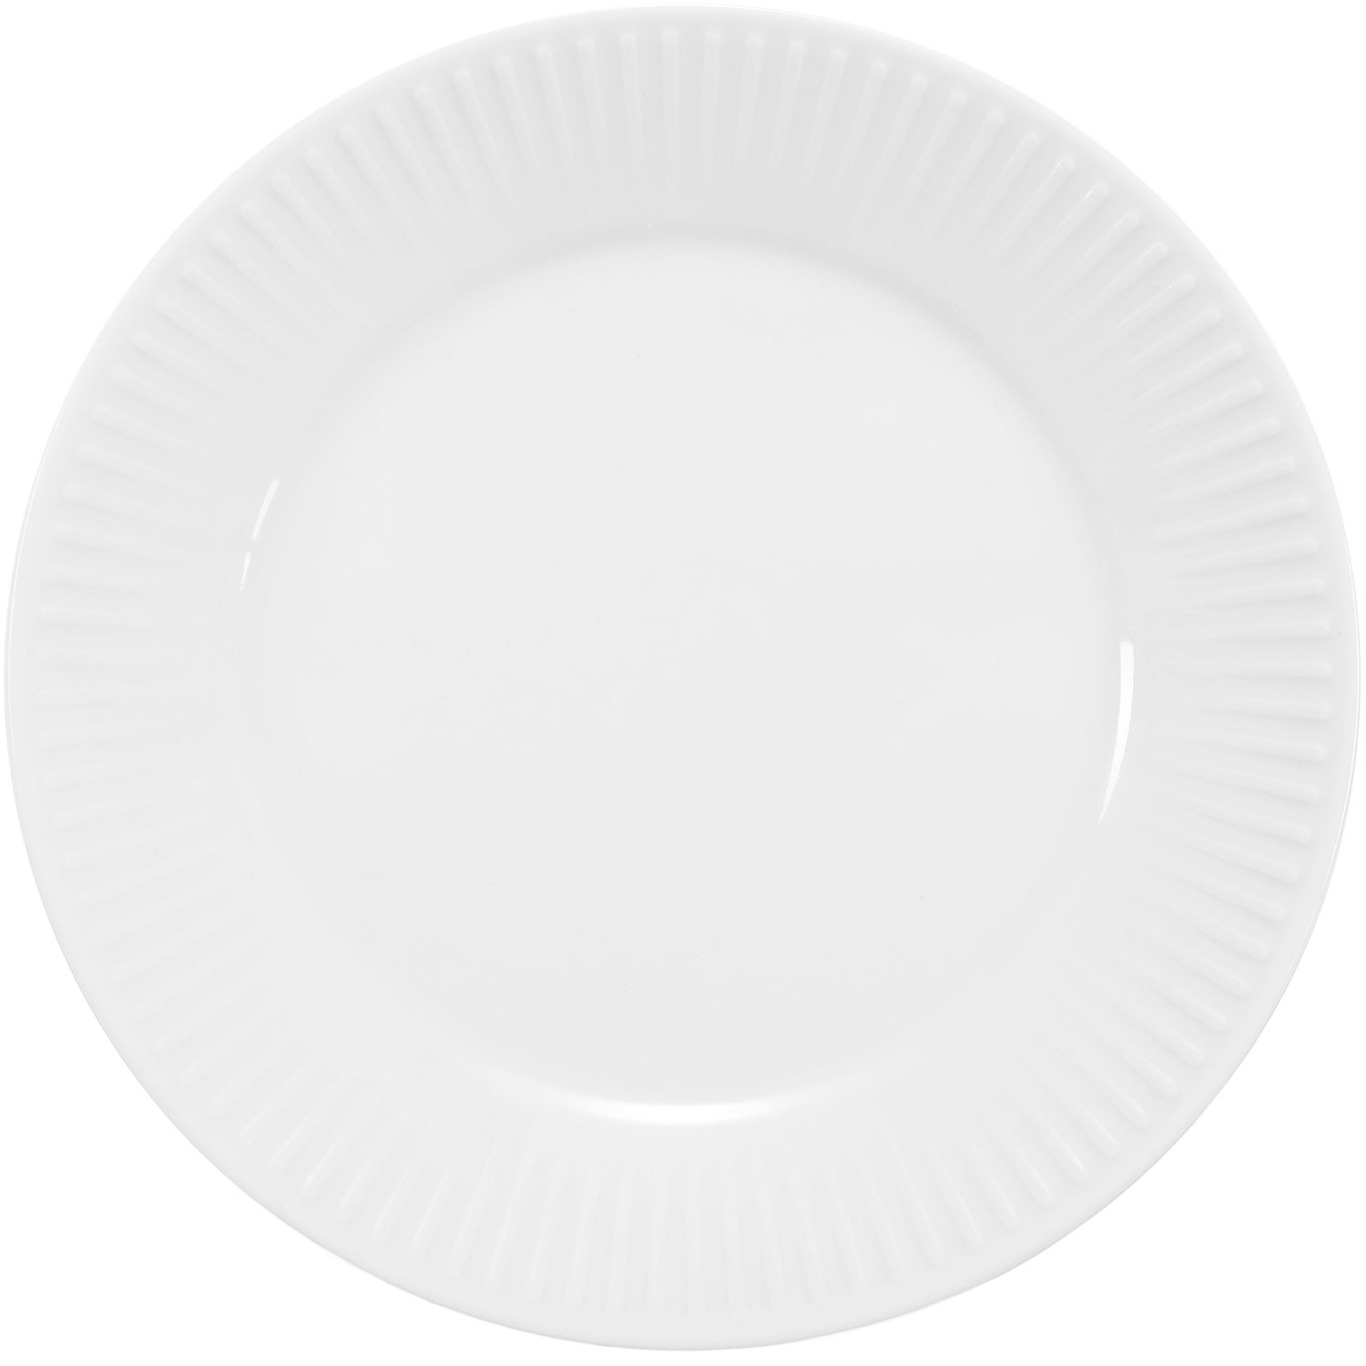 Douro Plate 18 cm, White